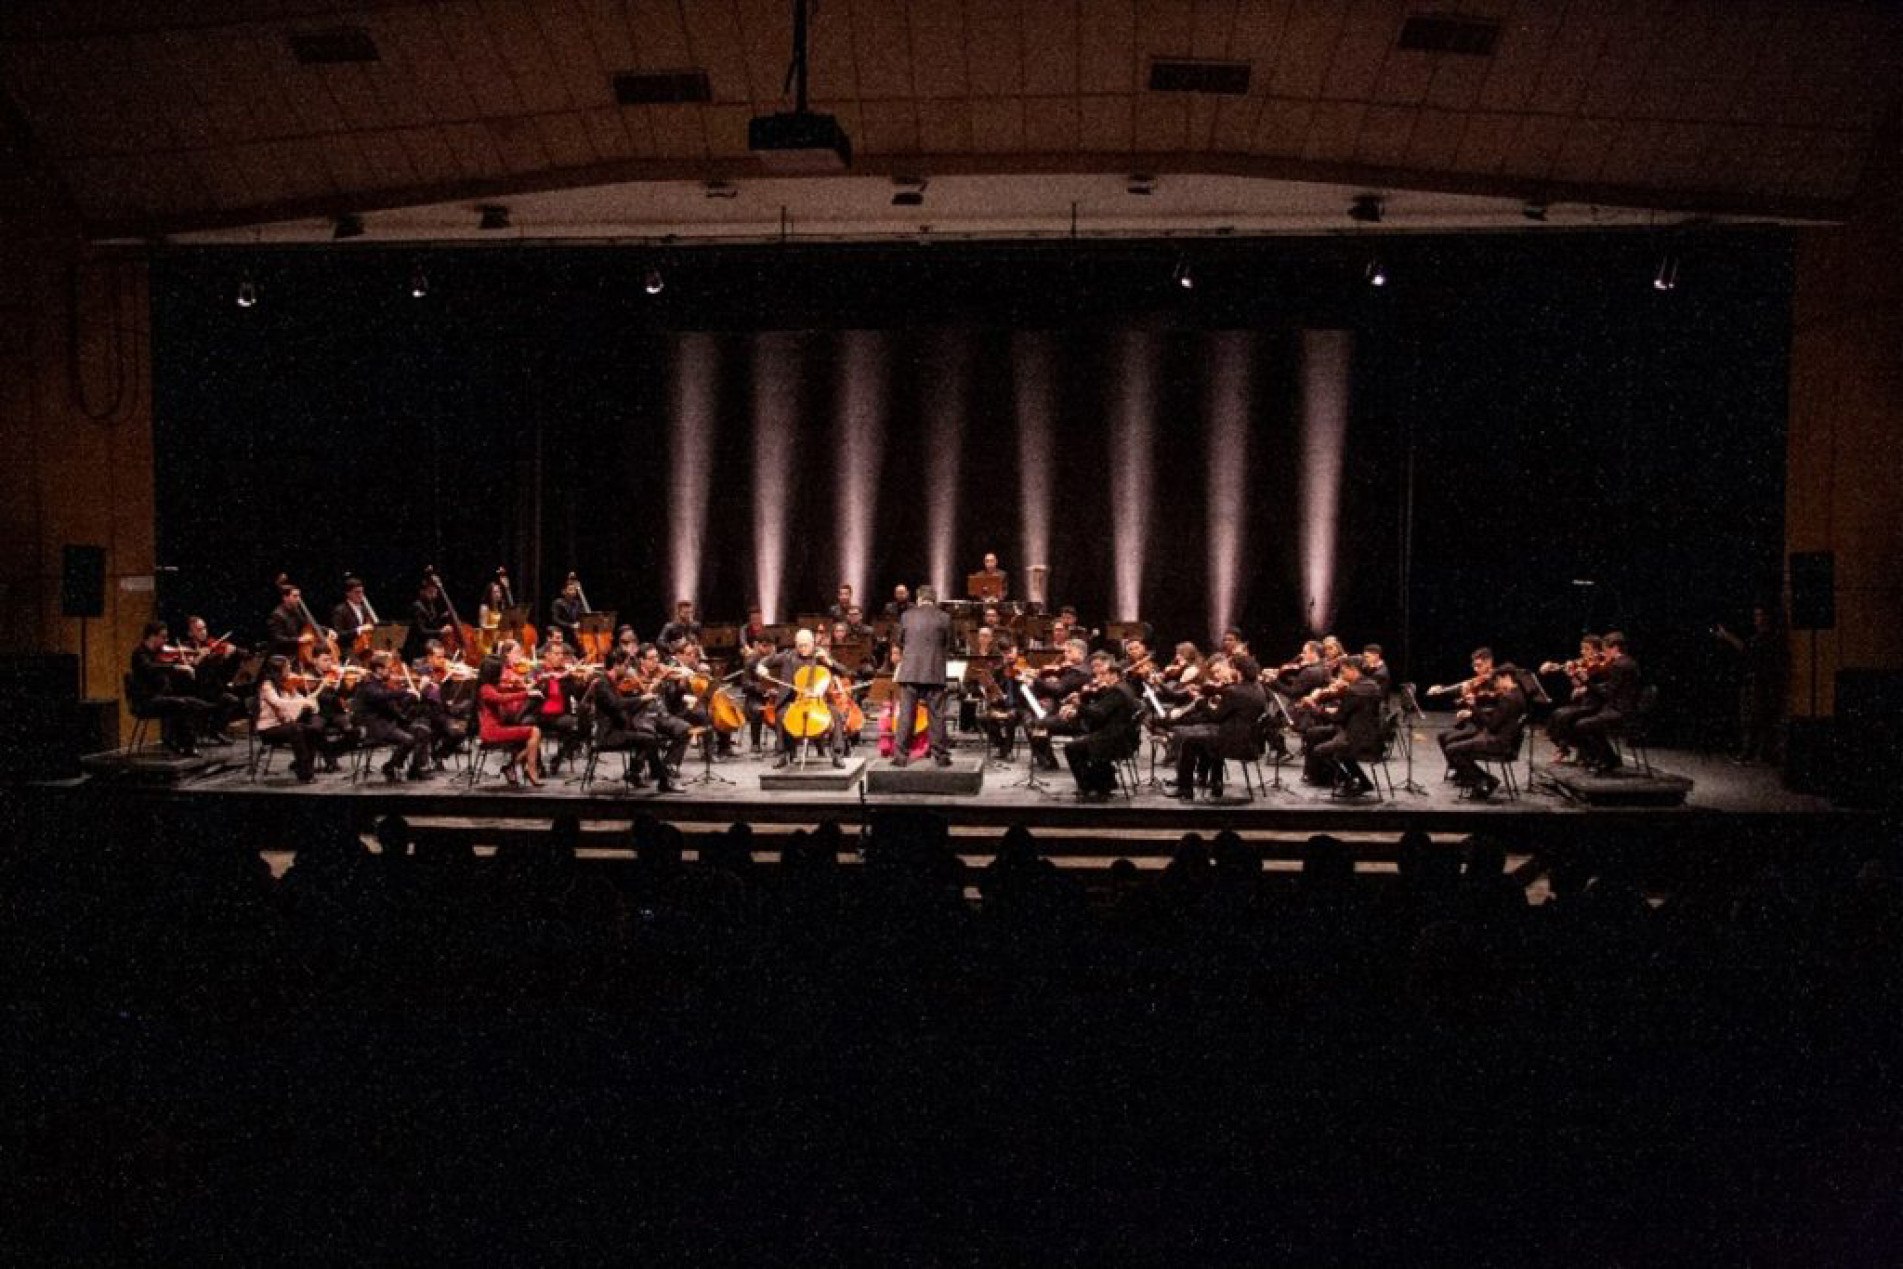 Concertos reúnem obras diversas e terão a regência de Emmanuele Baldini
